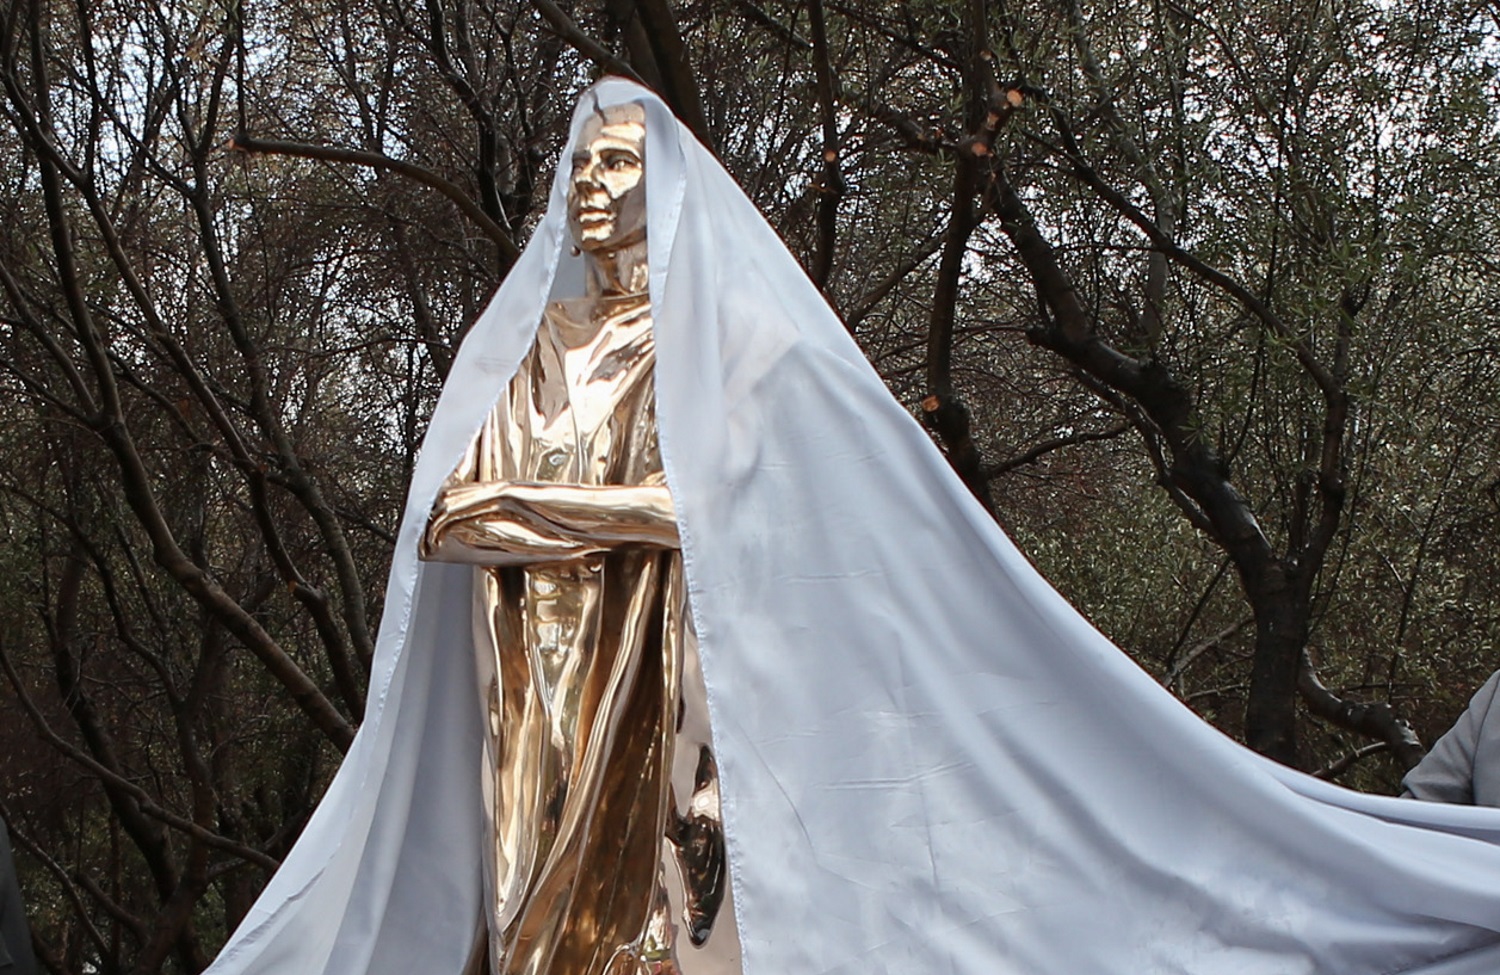 Γλέντι στο Twitter για το άγαλμα της Μαρίας Κάλλας - «Θα μπορούσε να είναι η Lady Gaga»